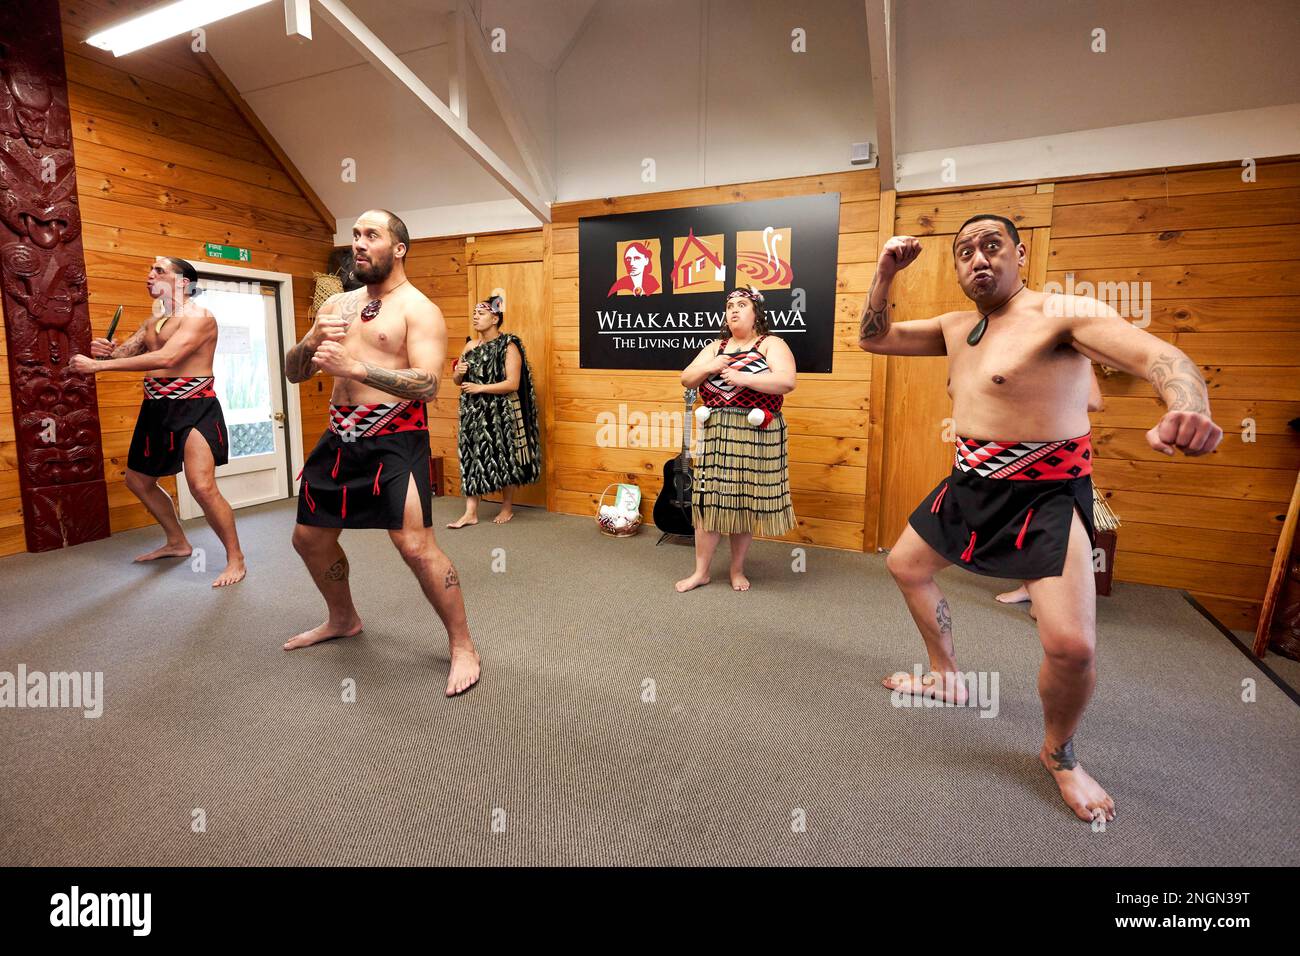 Whakarewarewa villaggio Maori. Haka tradizionale danza delle prestazioni Foto Stock